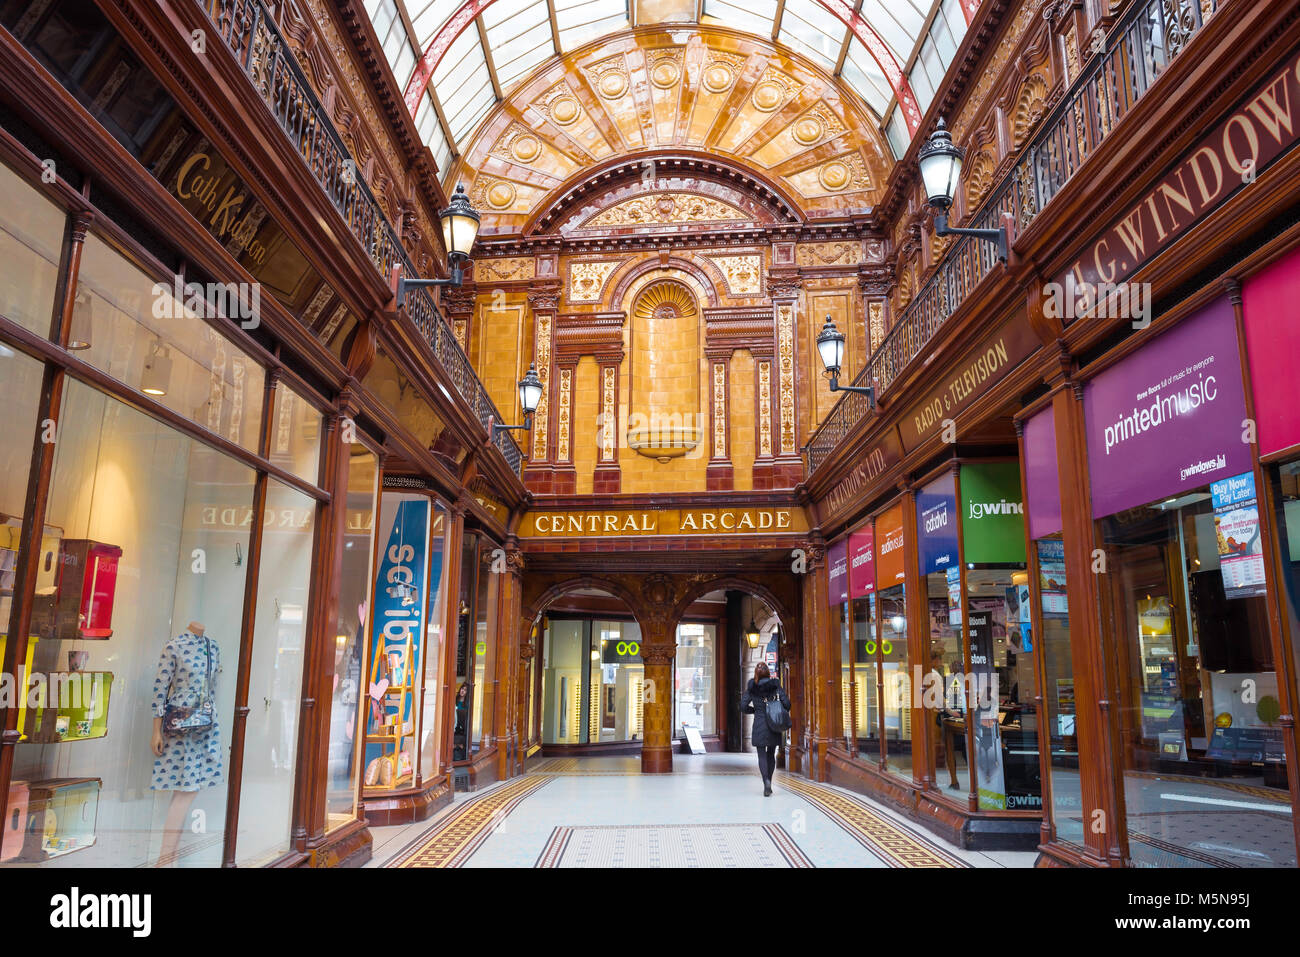 La arquitectura de la ciudad de Newcastle England, ver el interior de la galería central en el centro de la ciudad de Newcastle upon Tyne, Tyne y desgaste, Inglaterra Foto de stock